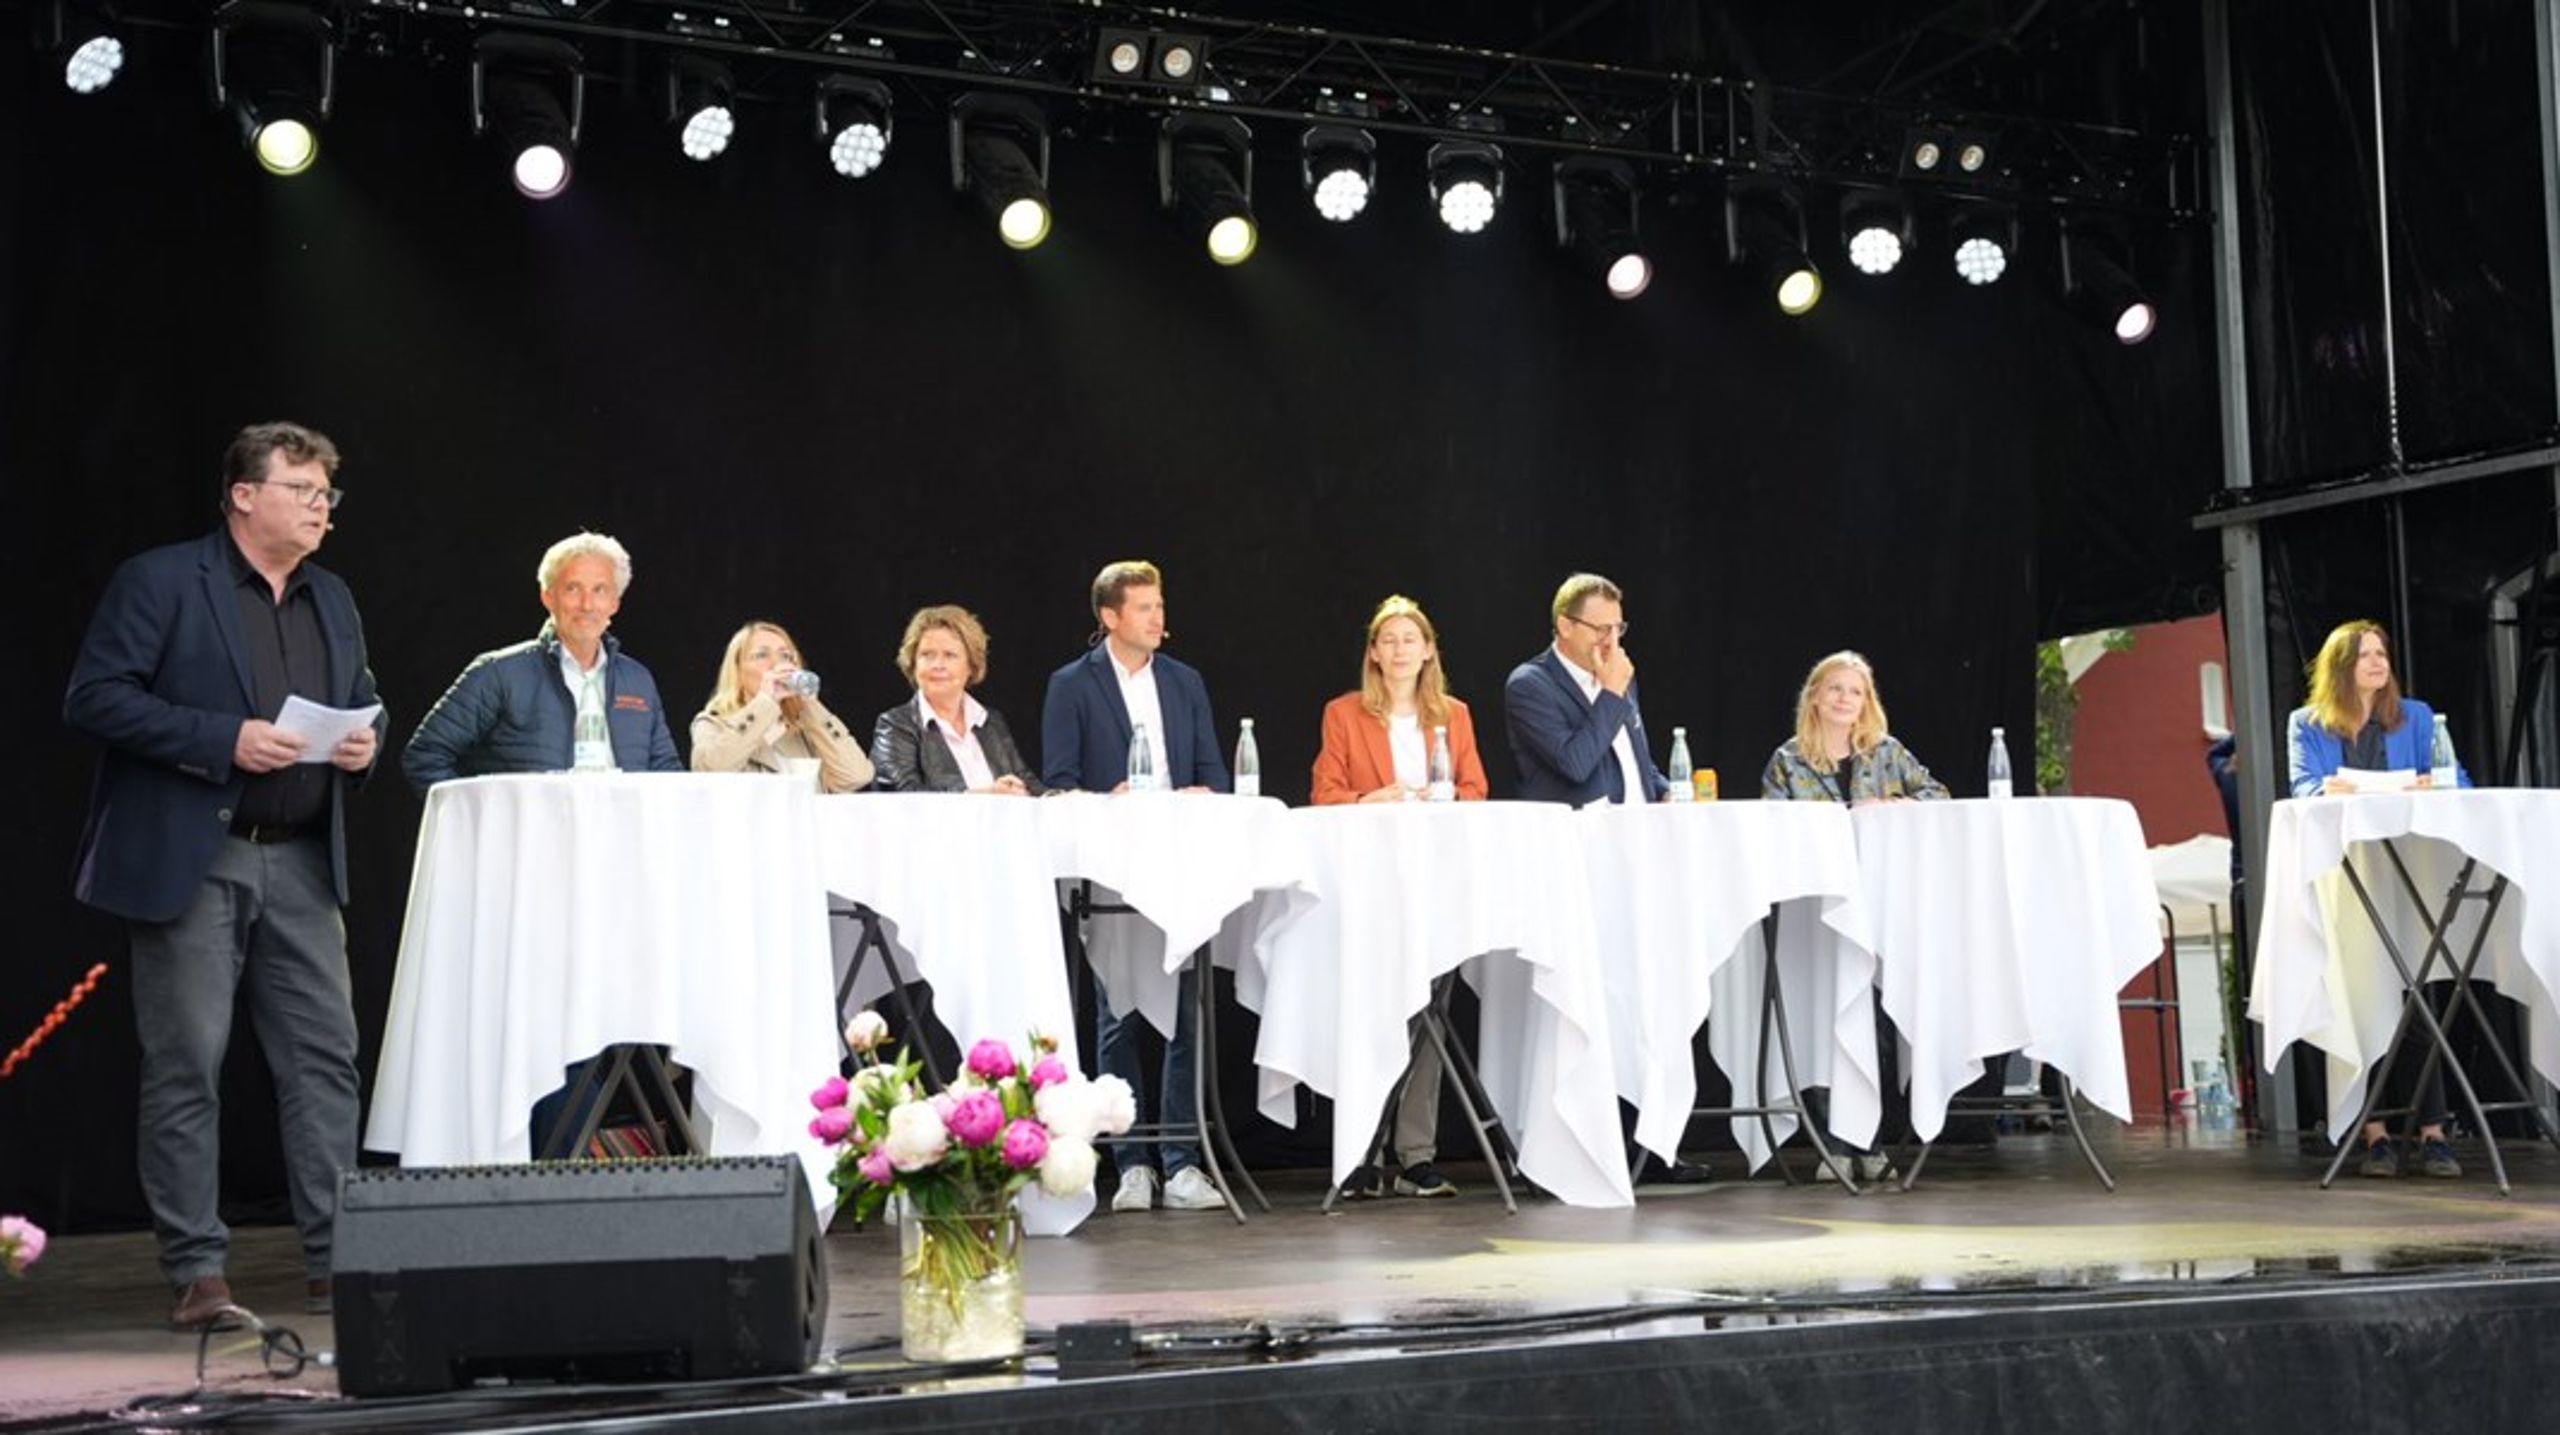 Fredag eftermiddag på Egepladsen i Mariager havde Altingets Rikke Albrechtsen og Thomas Lauritzen en række spidskandidater på scenen til debat om blandt andet klima, forsvar, udvidelse og grænsekontrol.